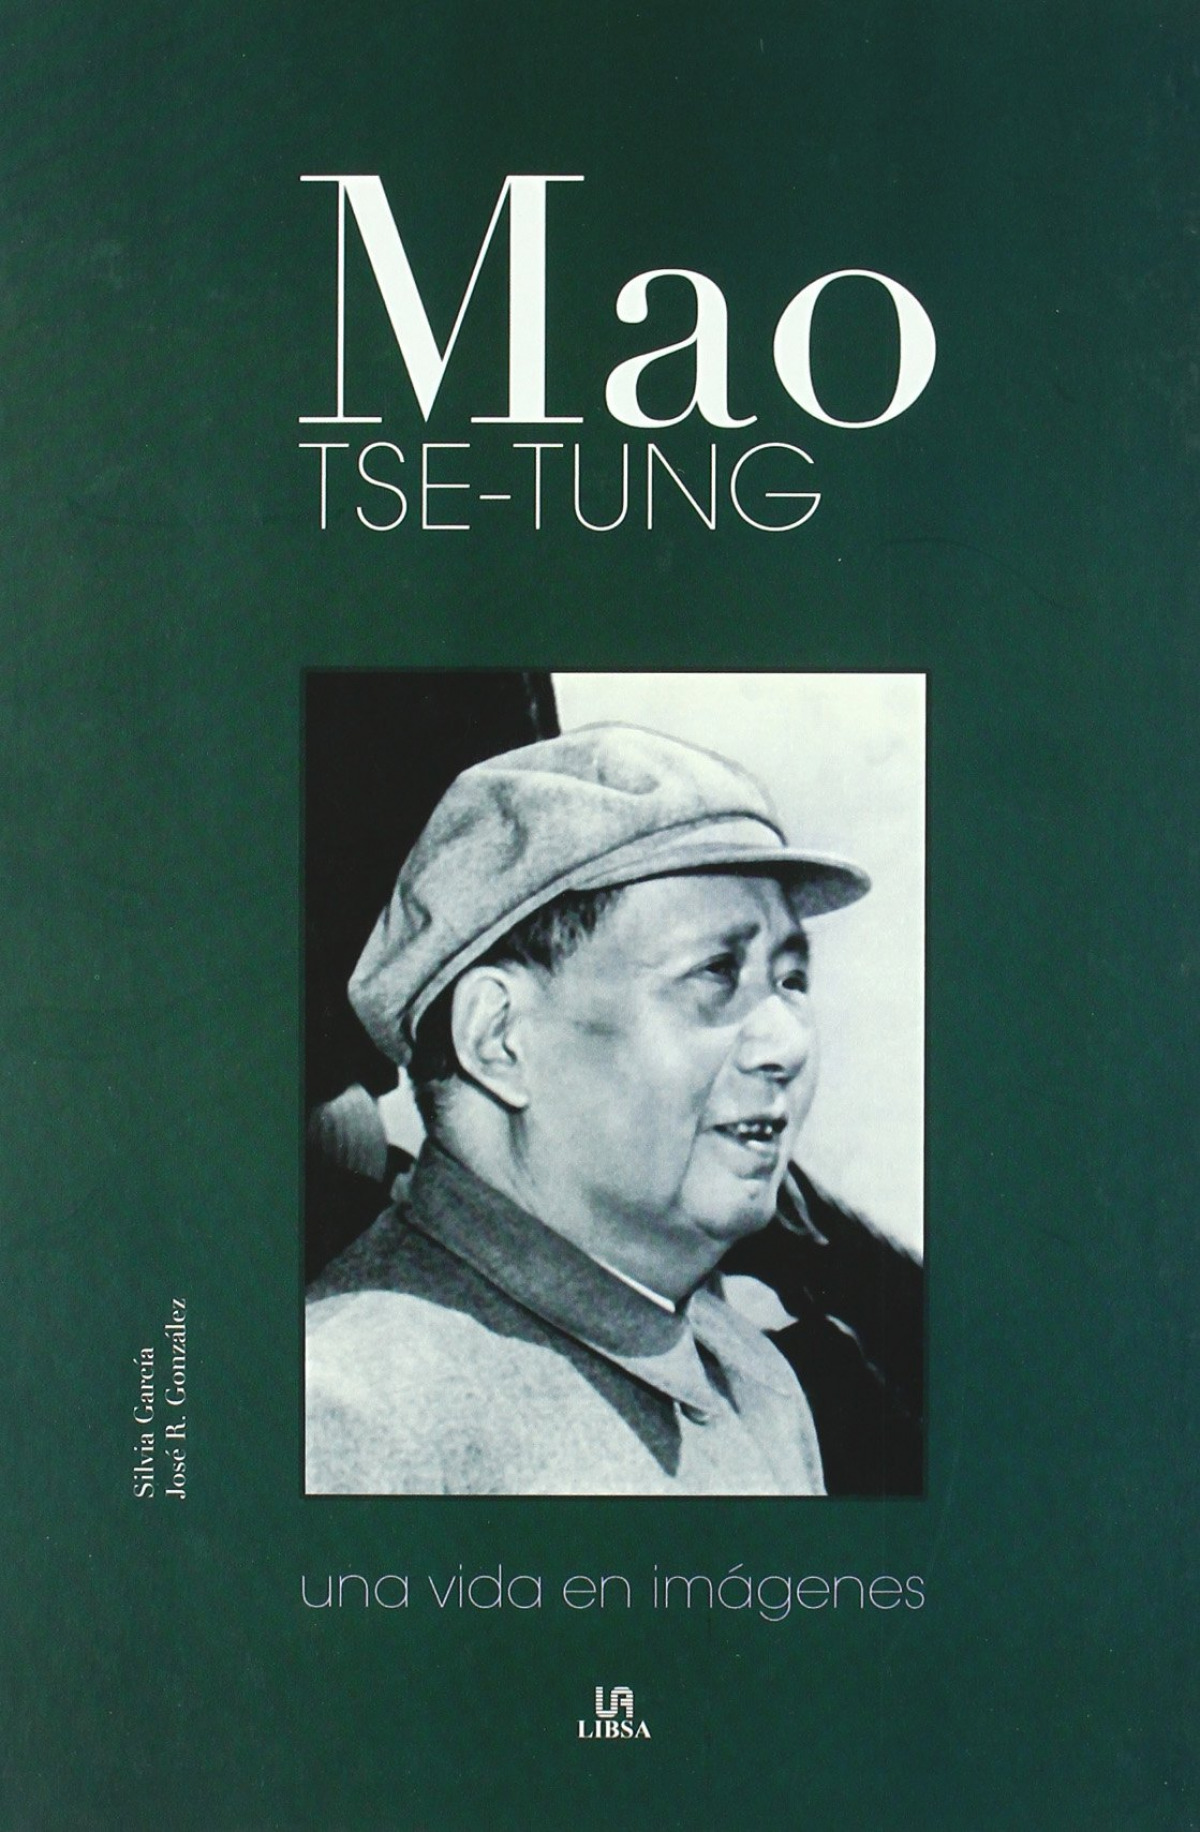 Mao tse tung - una vida en imagenes una vida en imagenes - Garcia, Silvia - Gonzalez, Jose